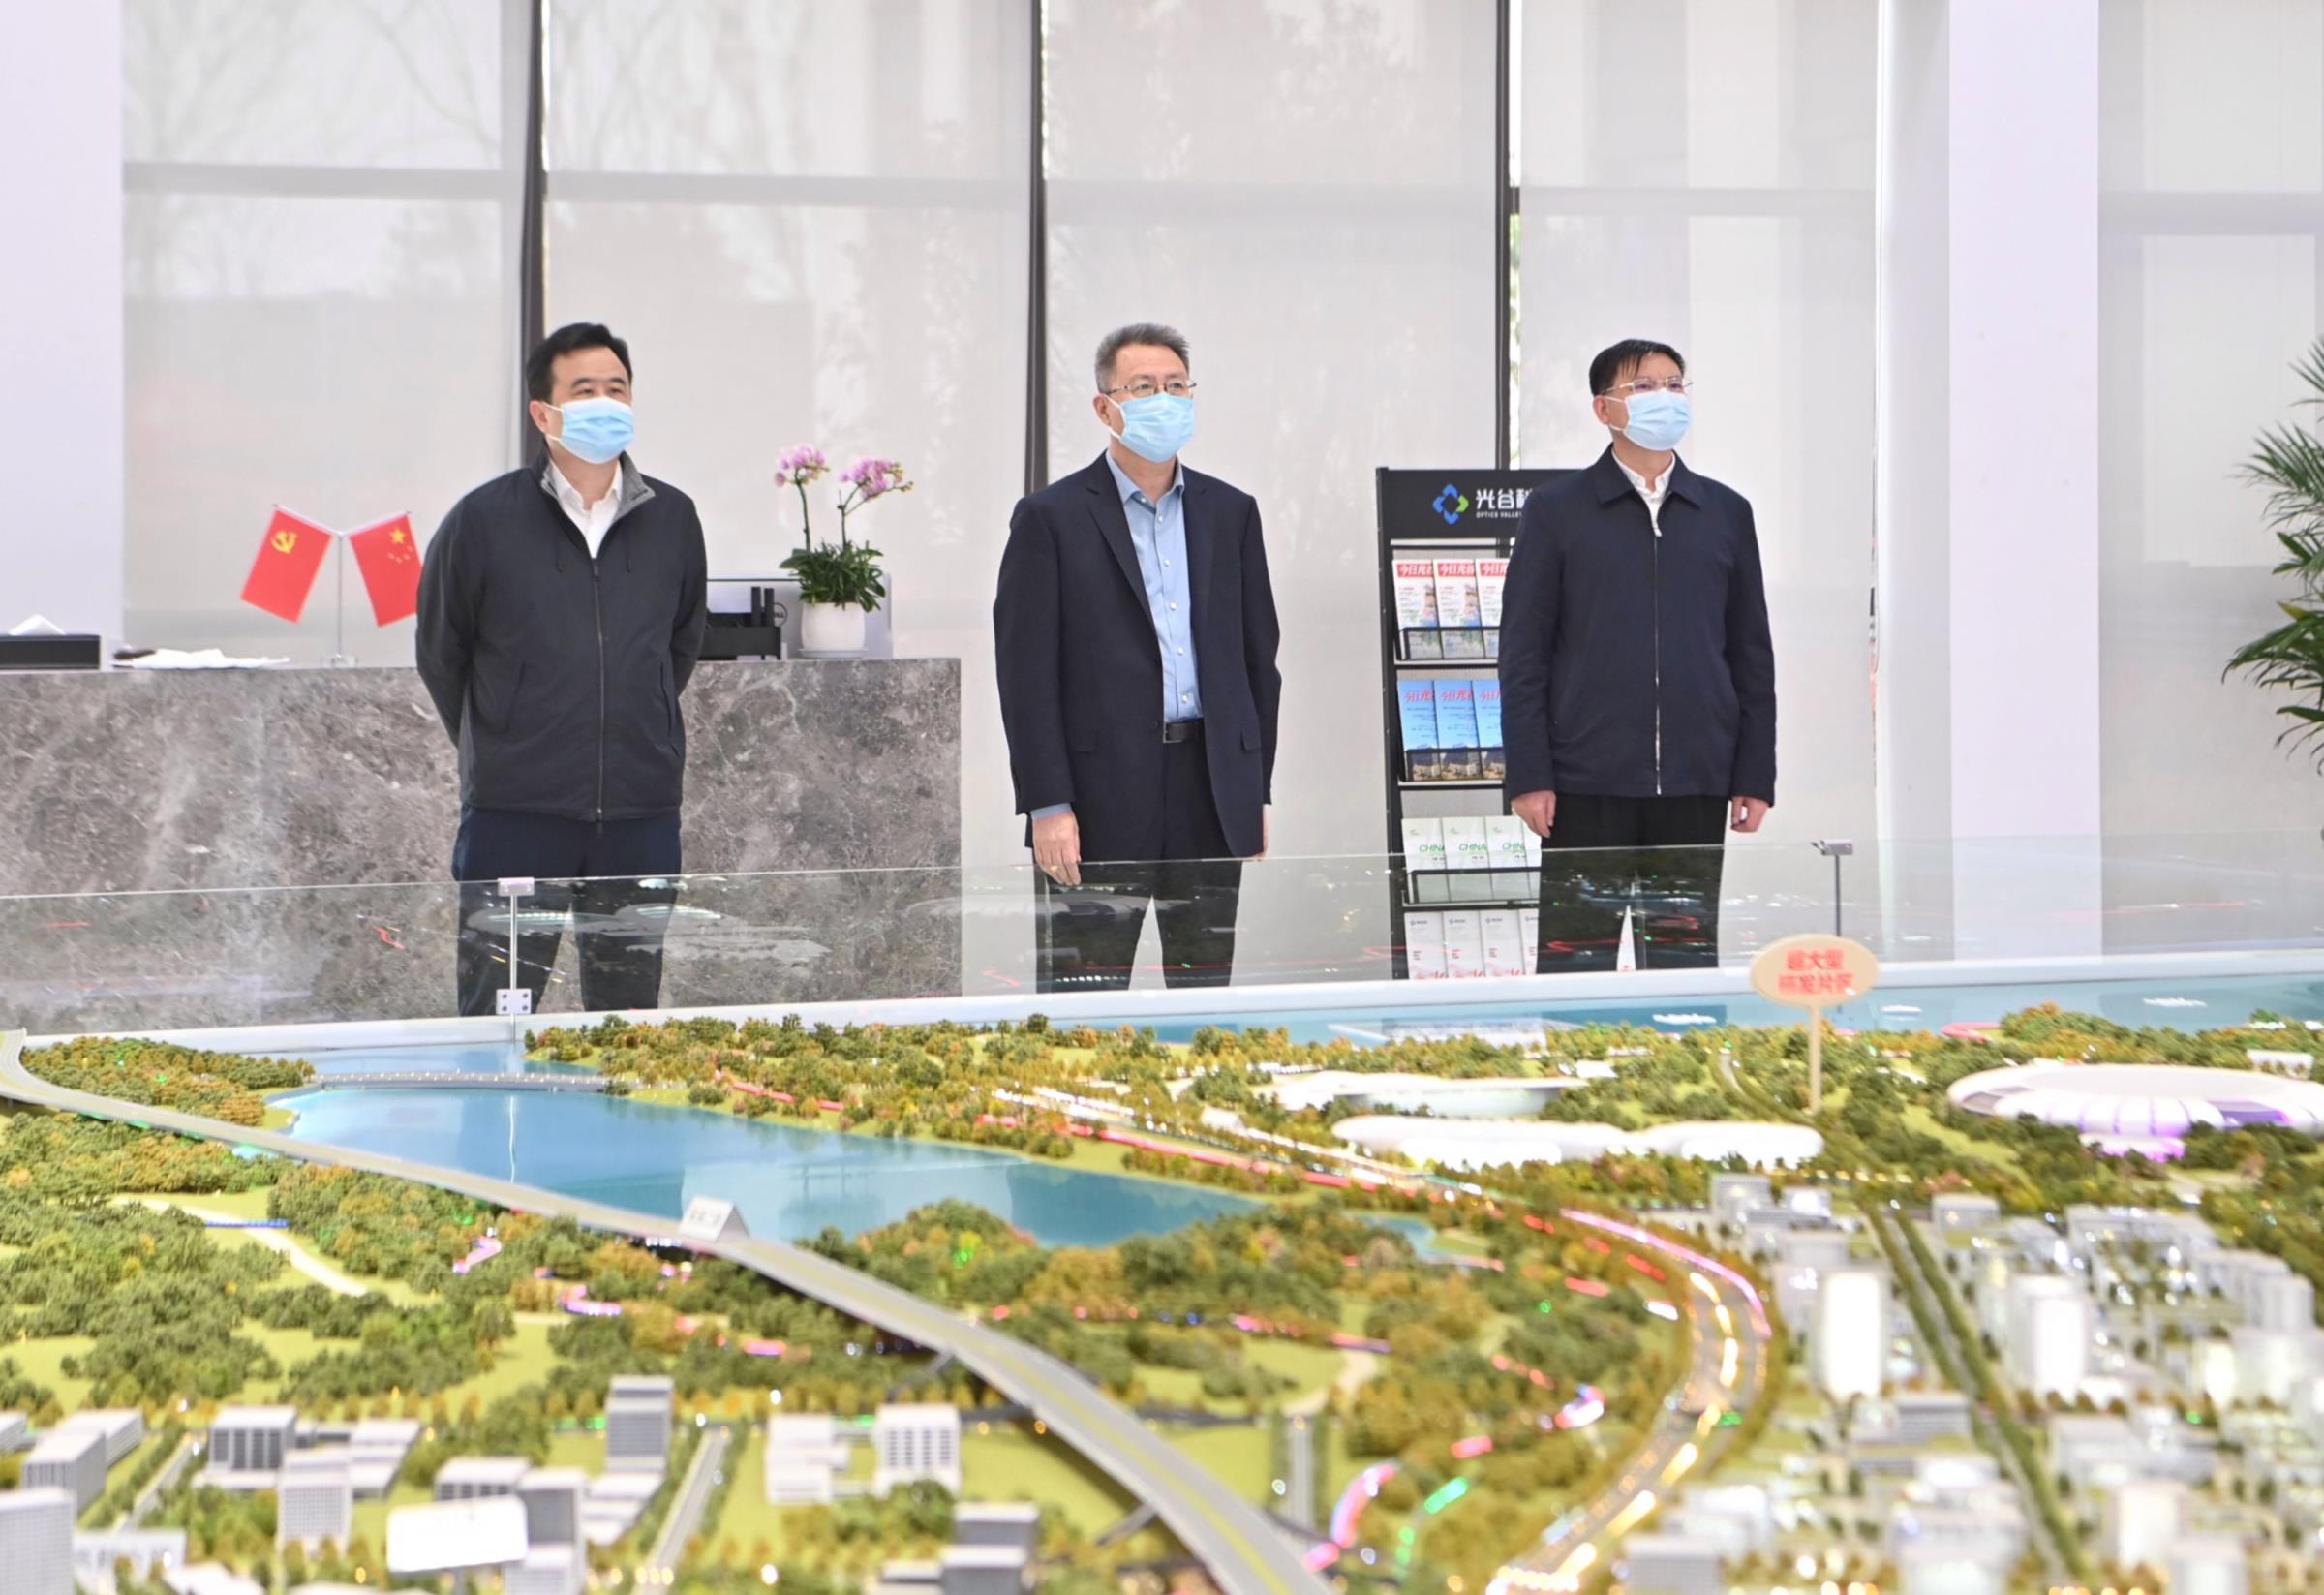 郭元强调研武汉新城规划建设工作，加快推进武汉新城重点项目建设，着力完善提升城市功能